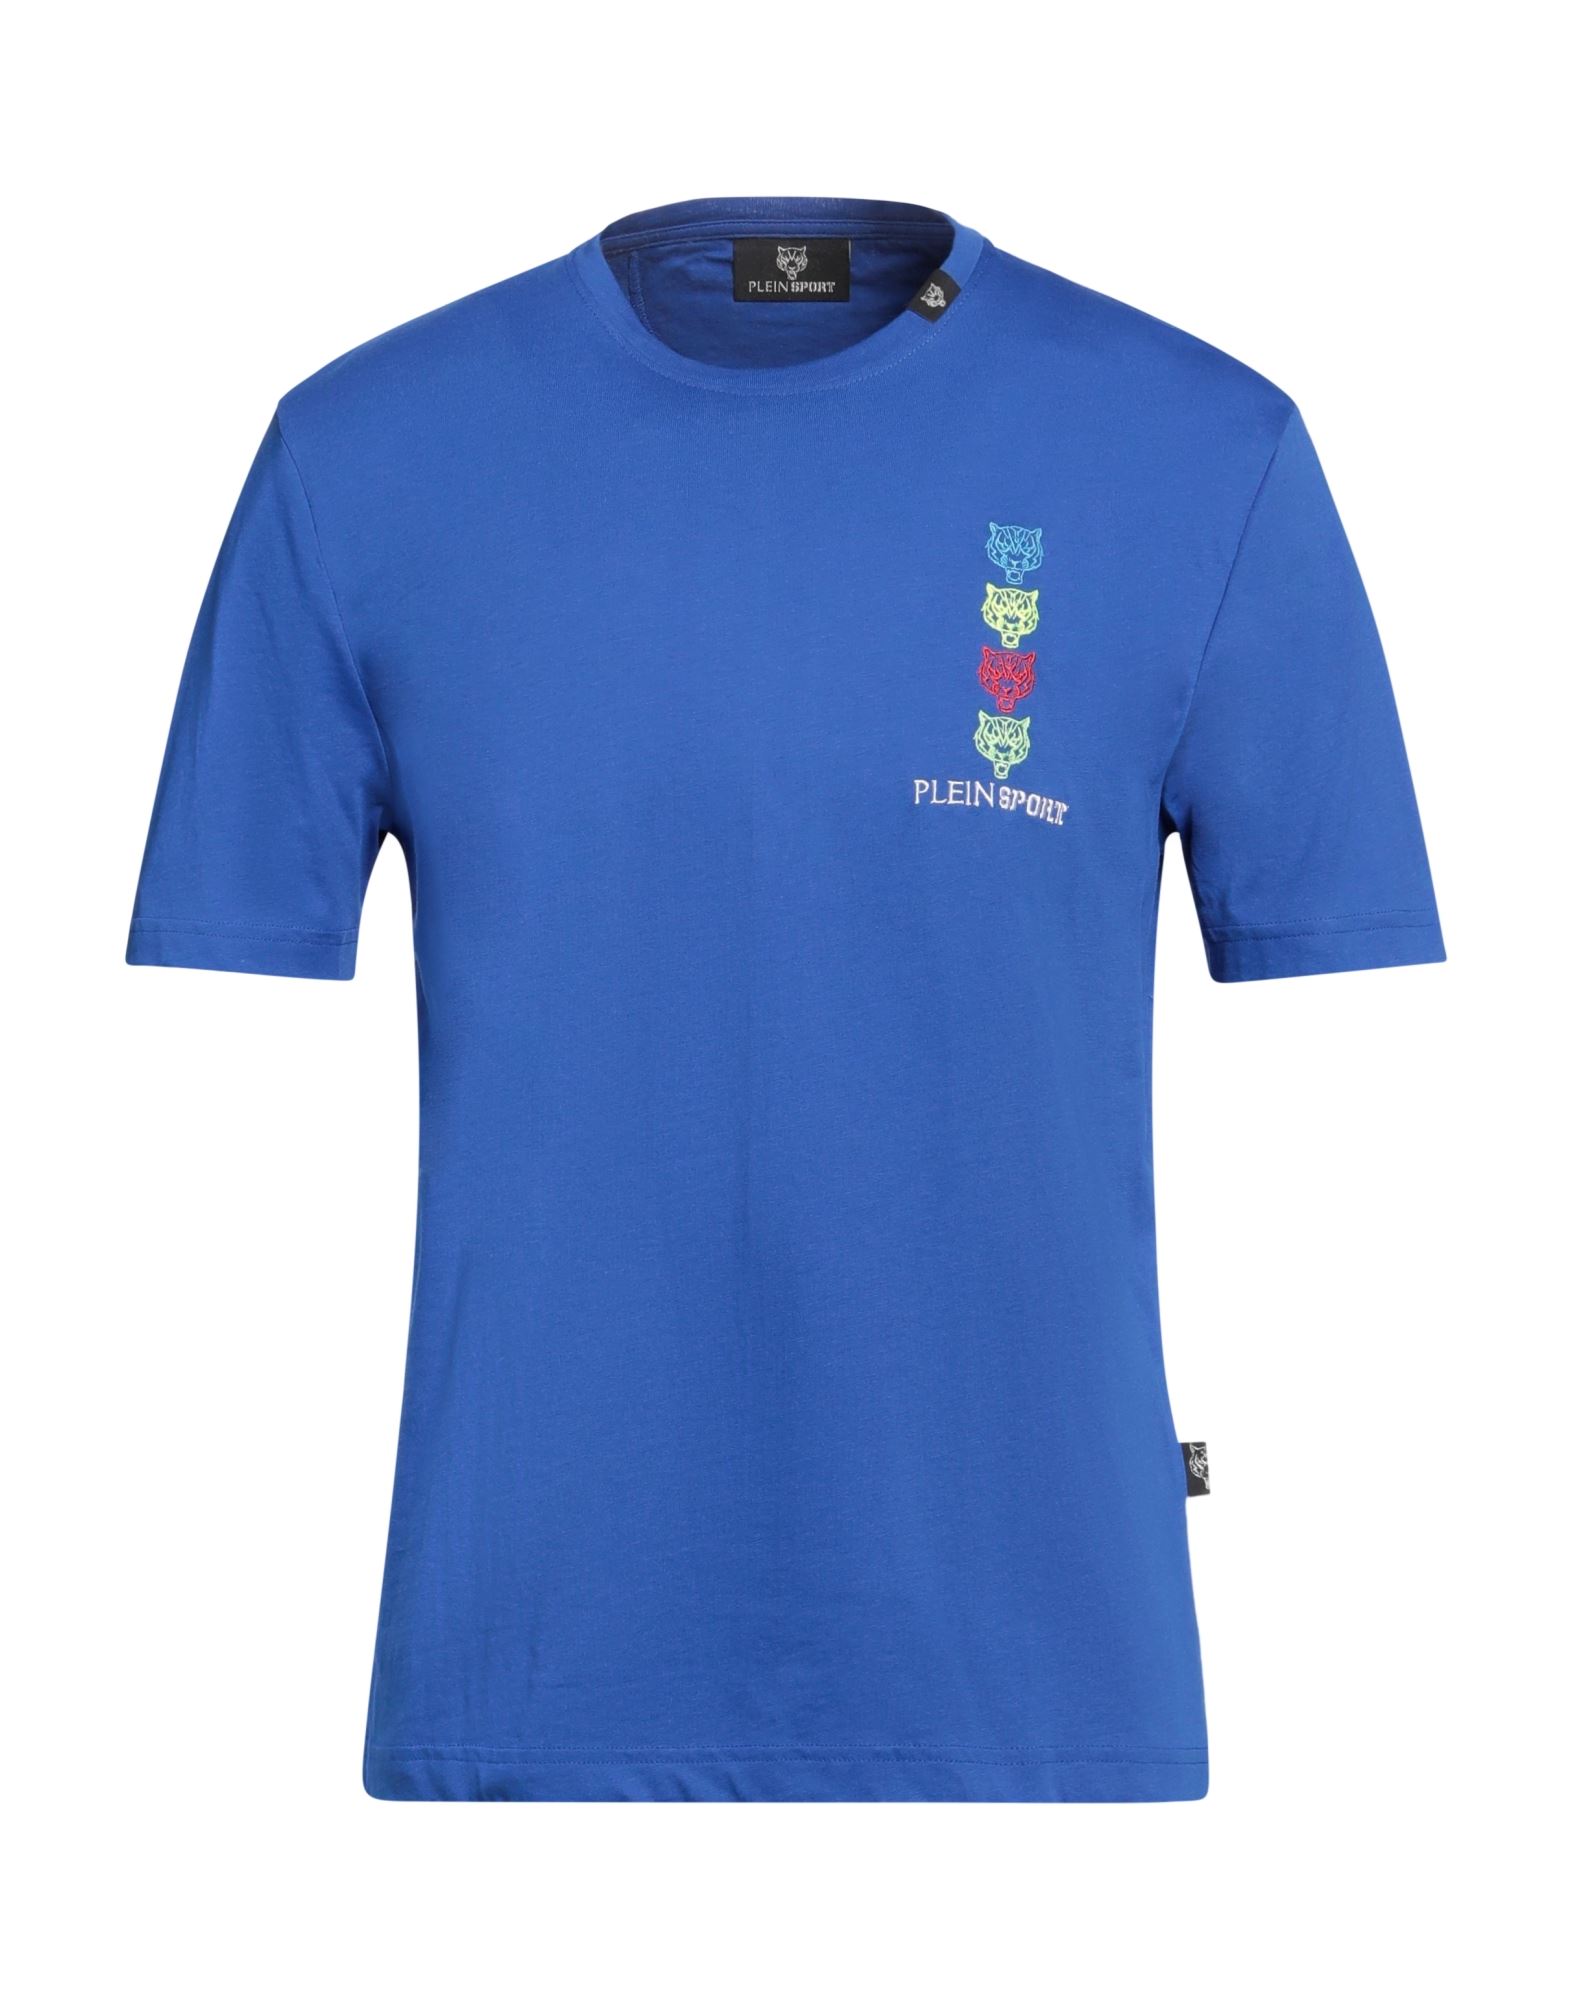 PLEIN SPORT T-shirts Herren Blau von PLEIN SPORT